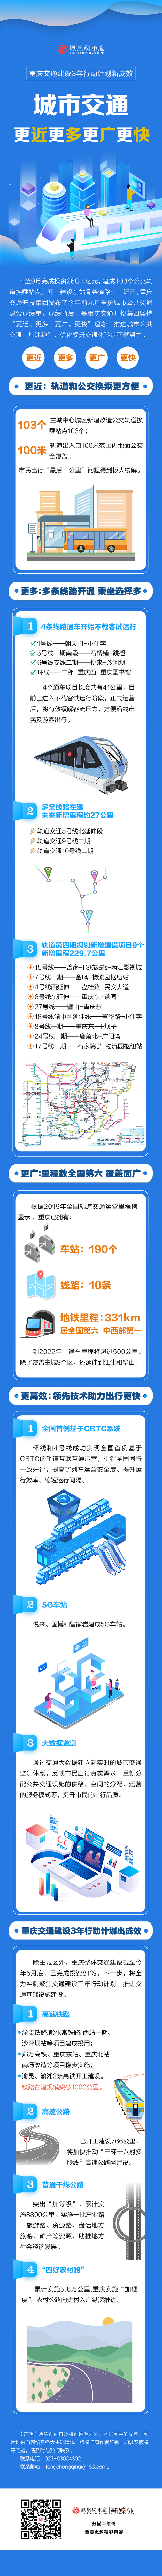 重庆交通建设3年行动计划新成效 城市交通更近更多更广更快